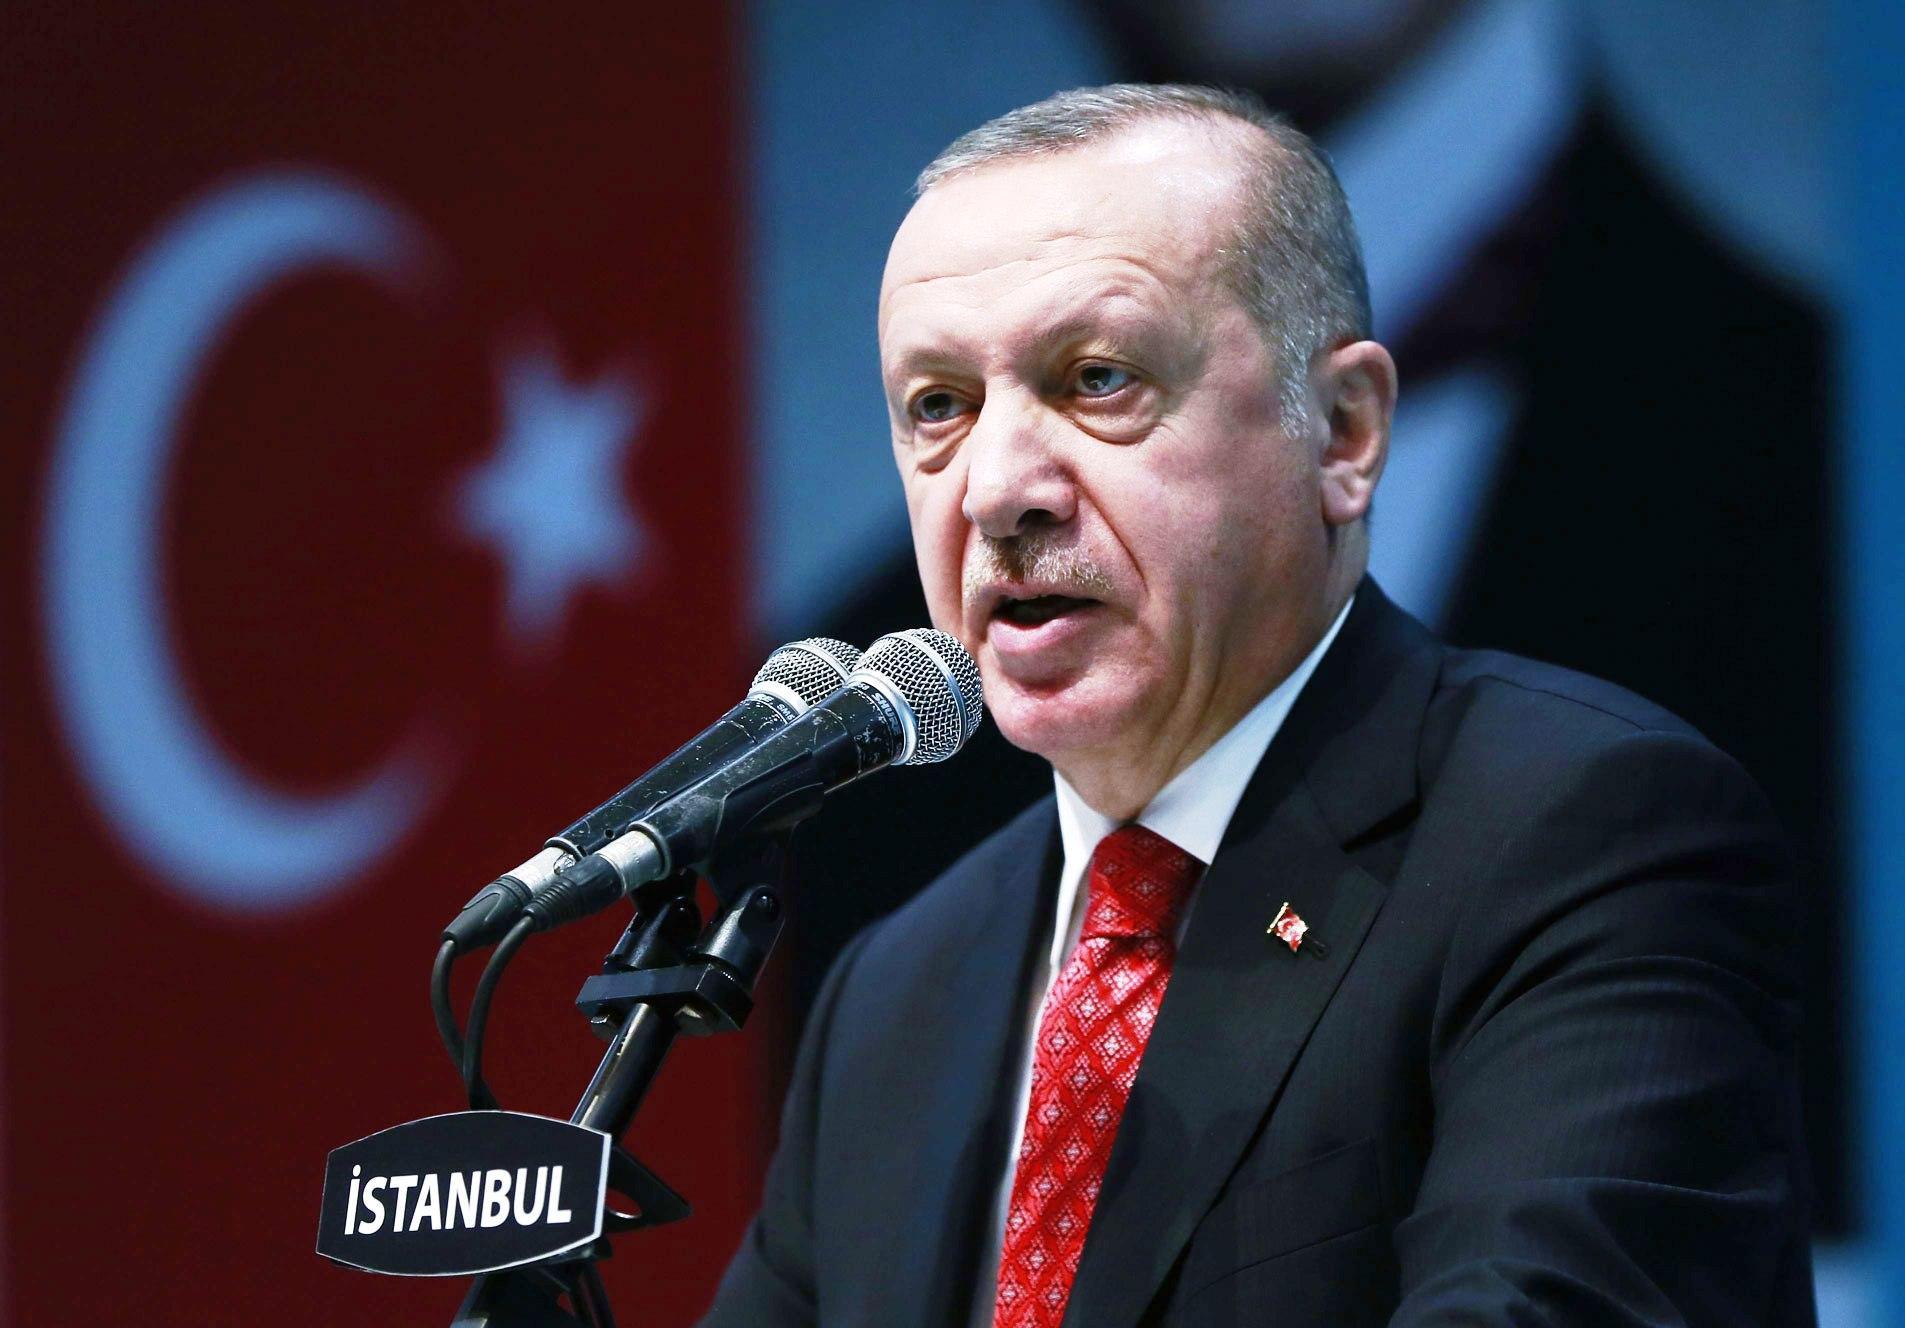 اردوغان يستغل مشاعر المسلمين لاهدافه السياسية